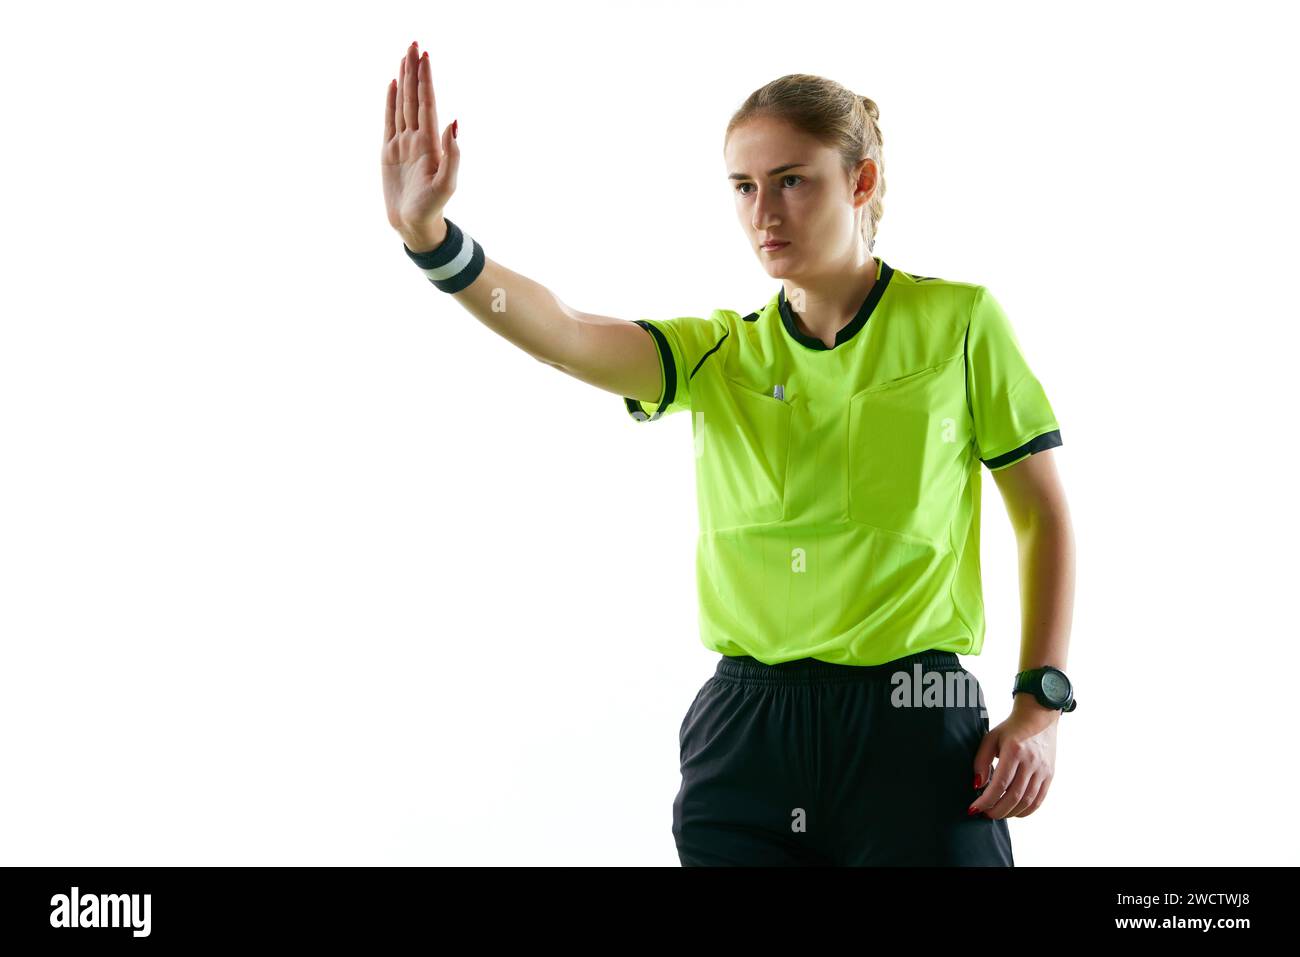 Jeune femme sérieuse, arbitre de football faisant des gestes, levant la main vers l'avant signifiant coup de pied de pénalité sur fond blanc de studio Banque D'Images